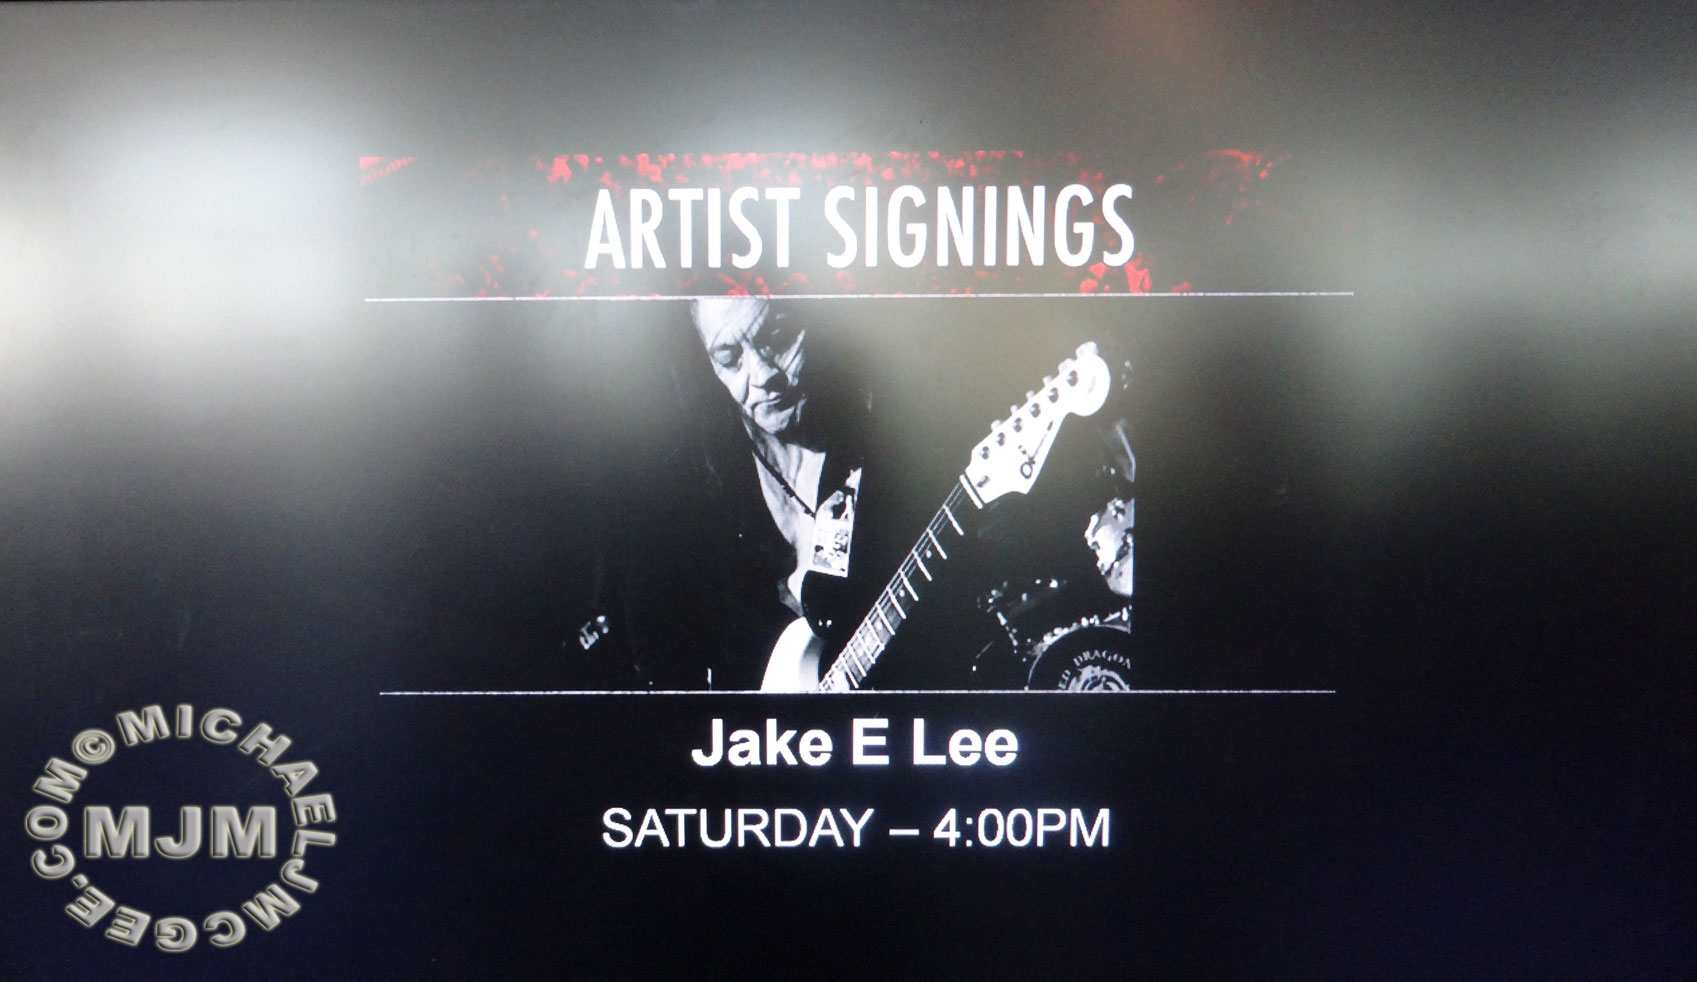 Jake E Lee / michaeljmcgee.com